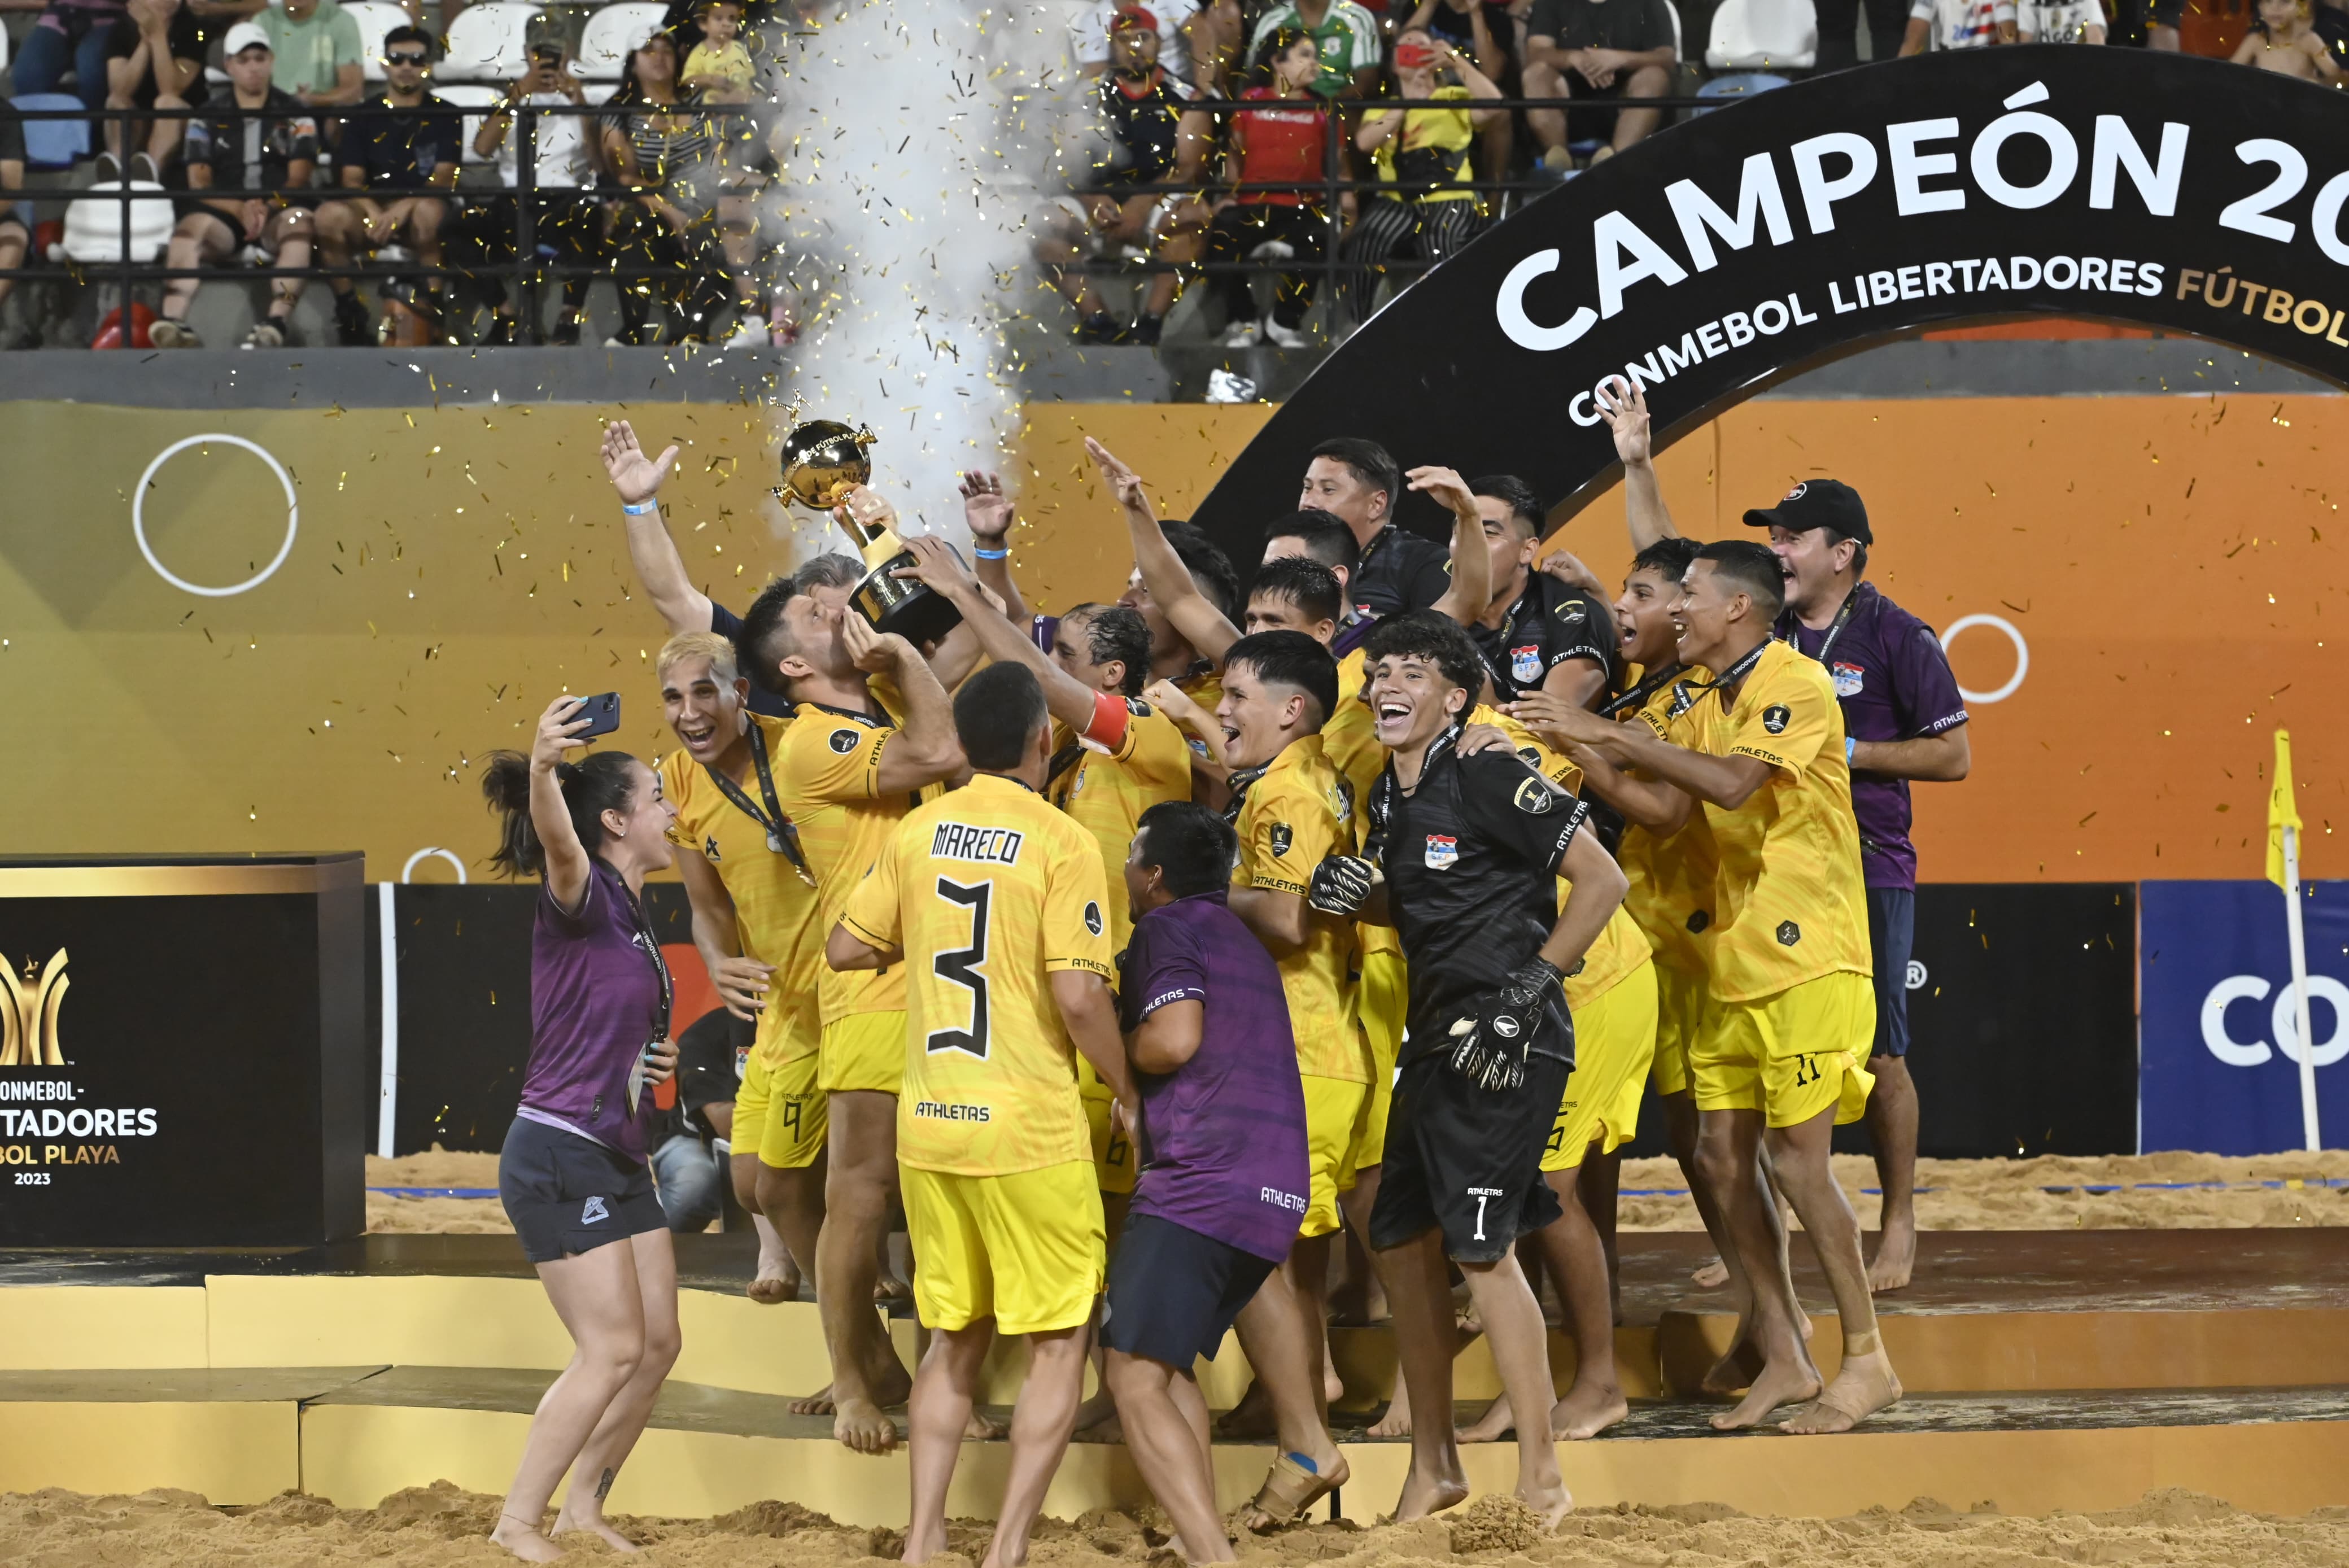 Victoria_Andrés are the Campeonato de Fútbol Playa 2023 champions